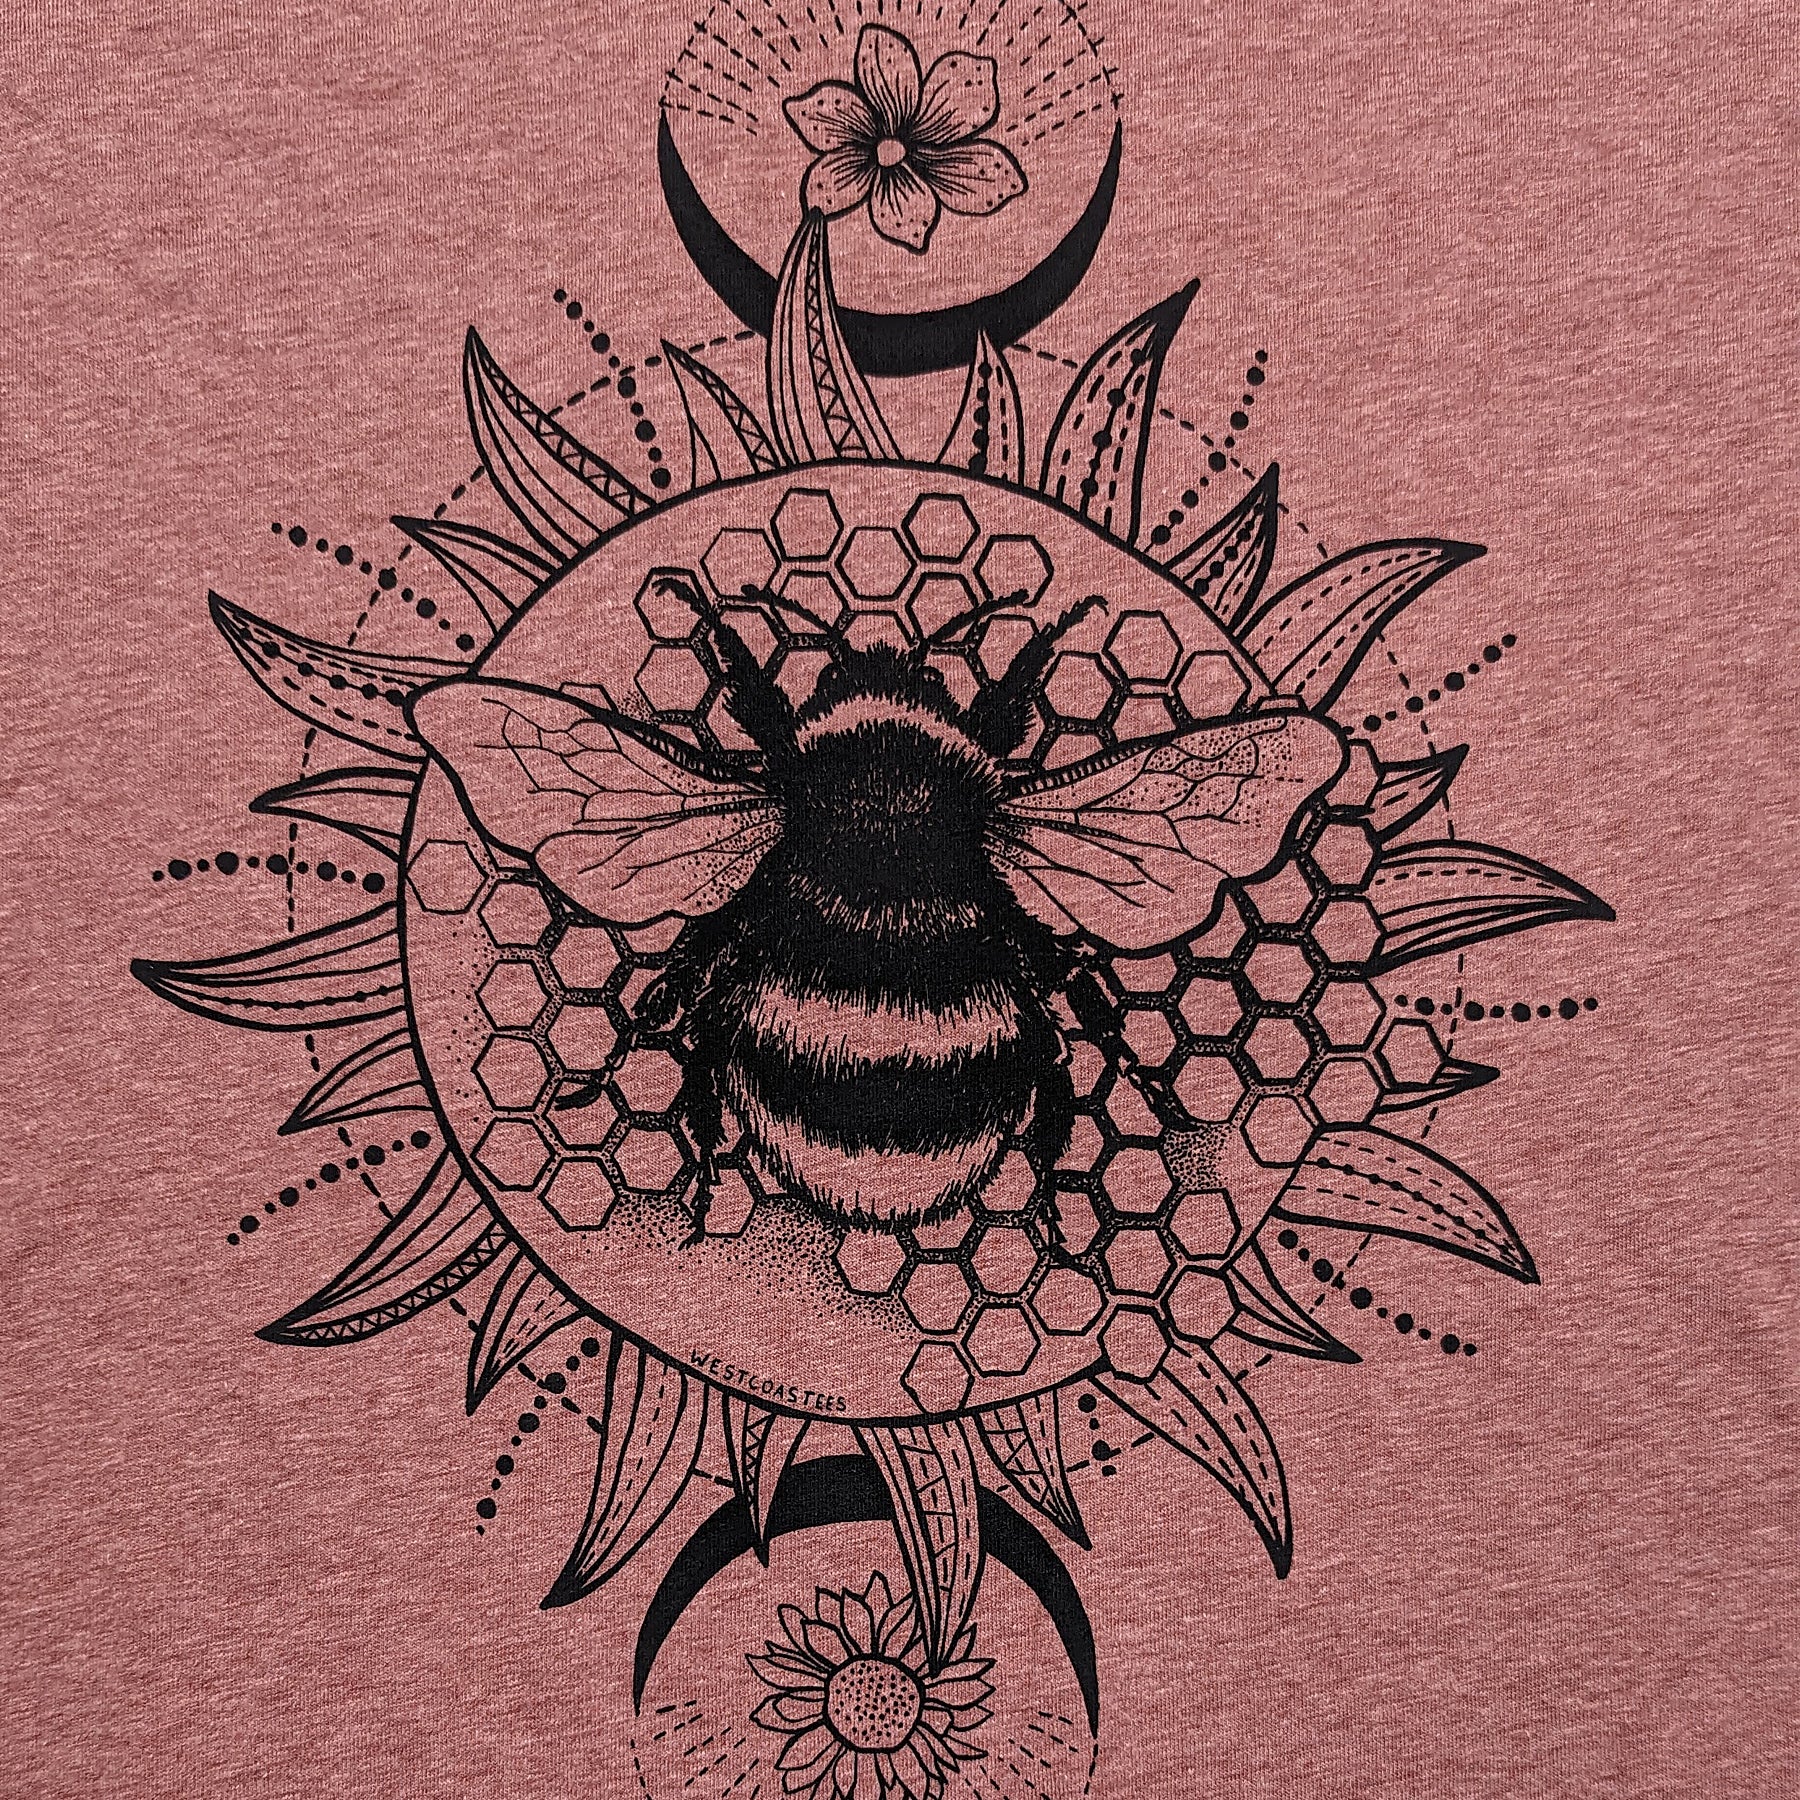 Women's Bumblebee V-neck T-shirt